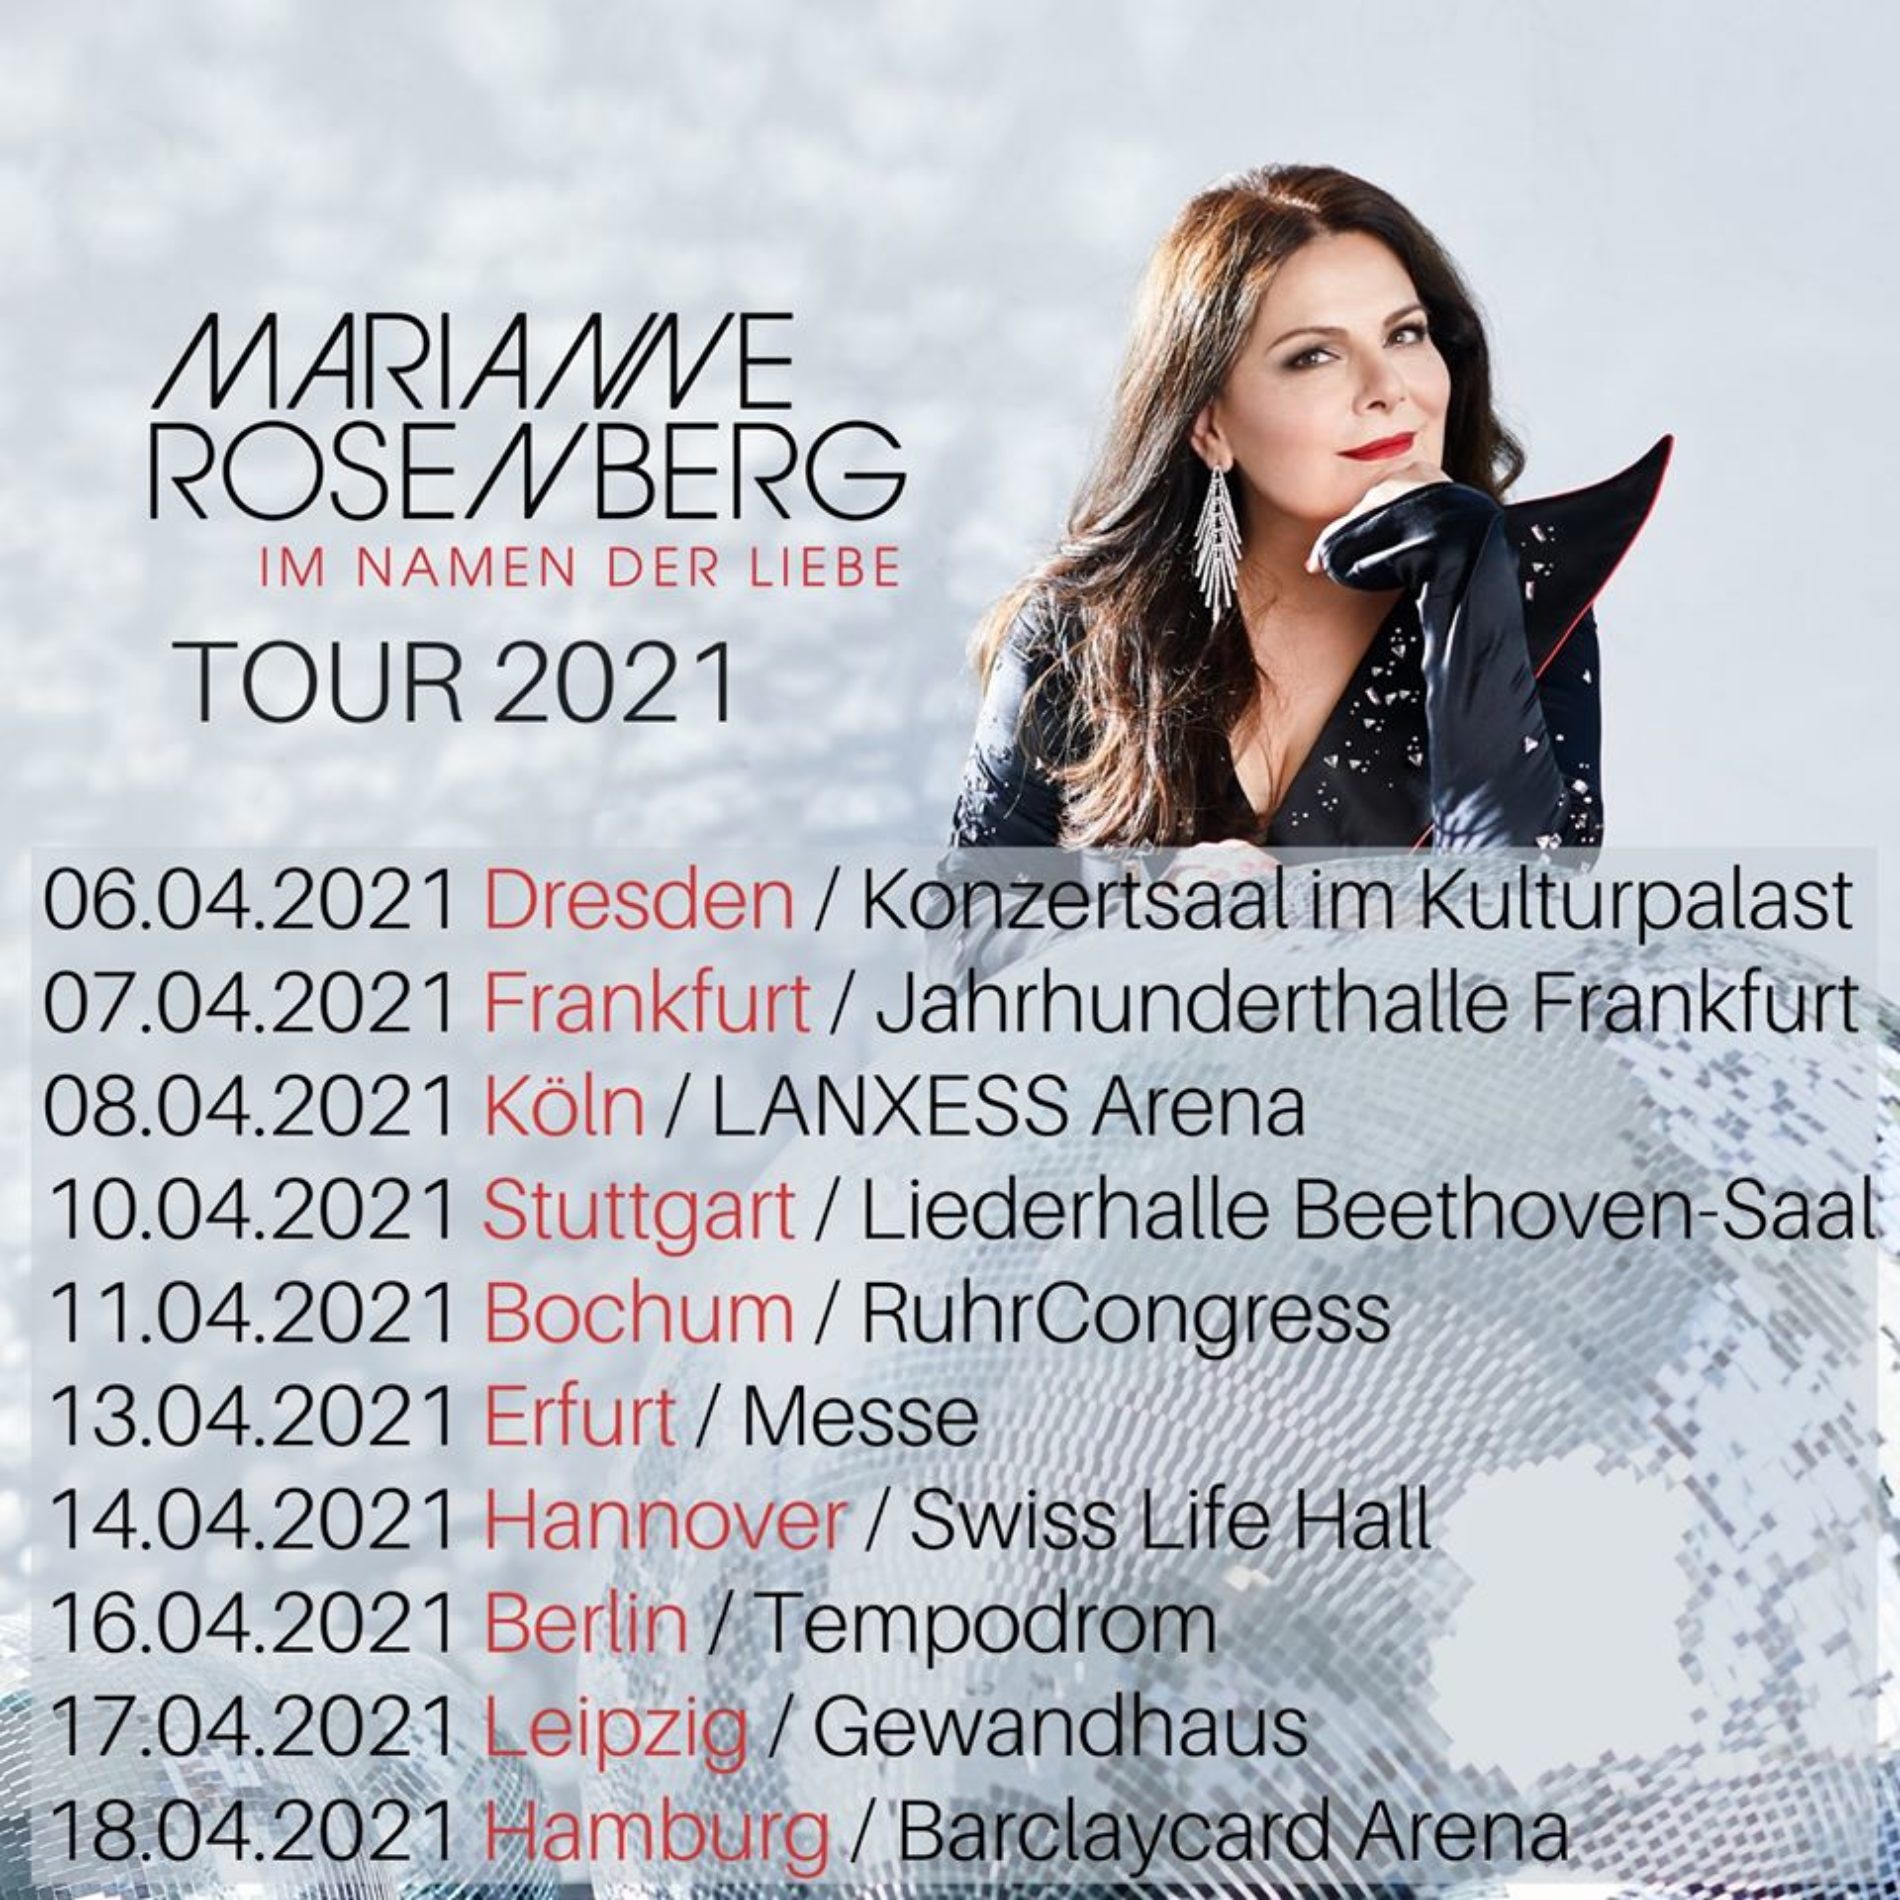 Marianne Rosenberg – Tour 2021